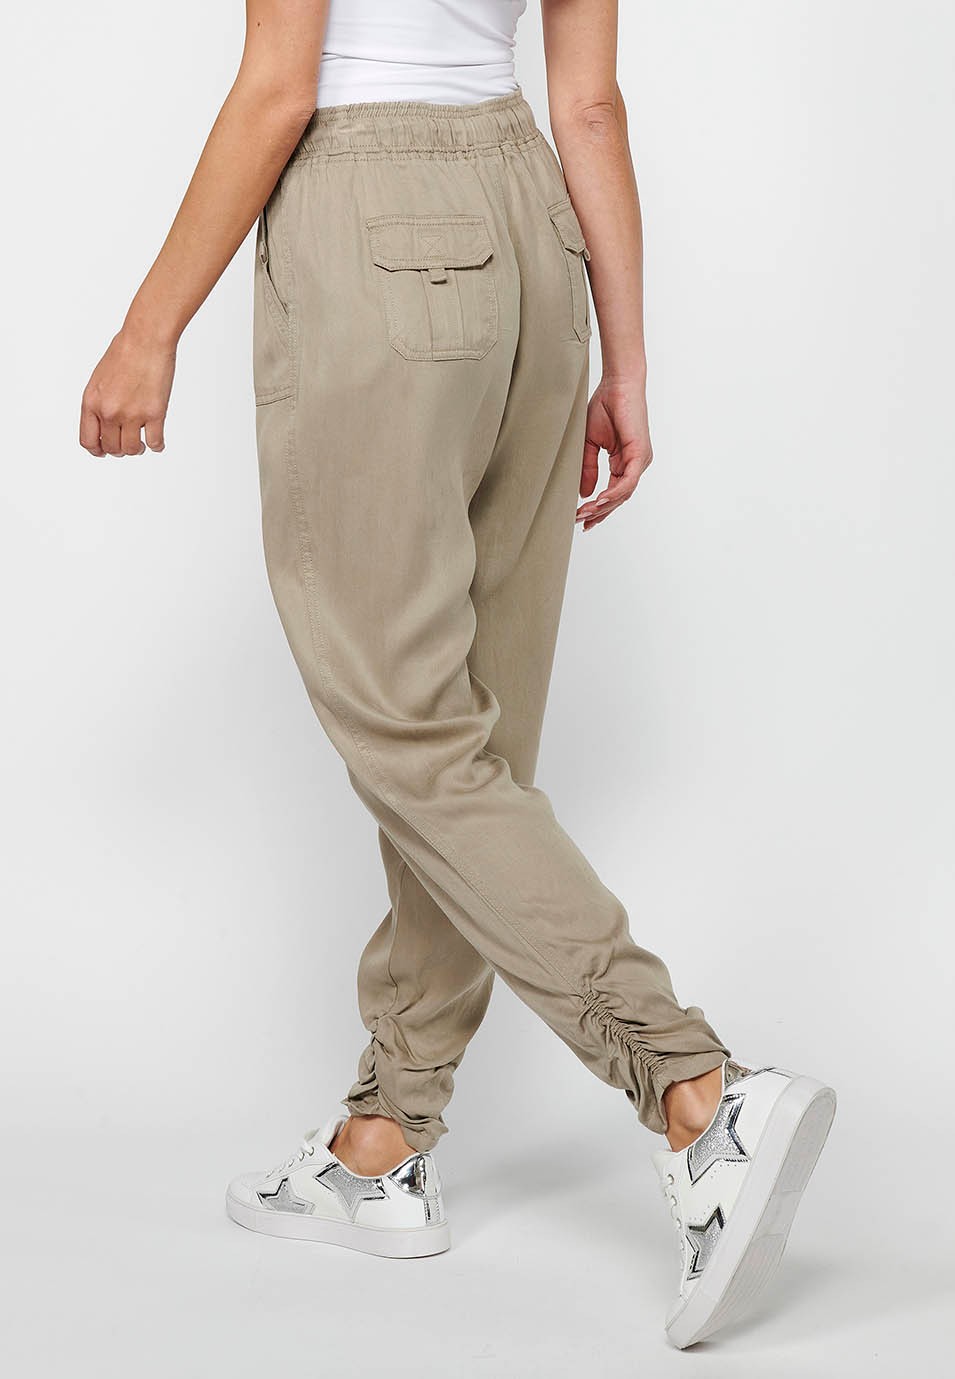 Pantalon de jogging long finition bouclée et taille caoutchoutée avec quatre poches, deux poches arrière à rabat en Gris pour Femme 8